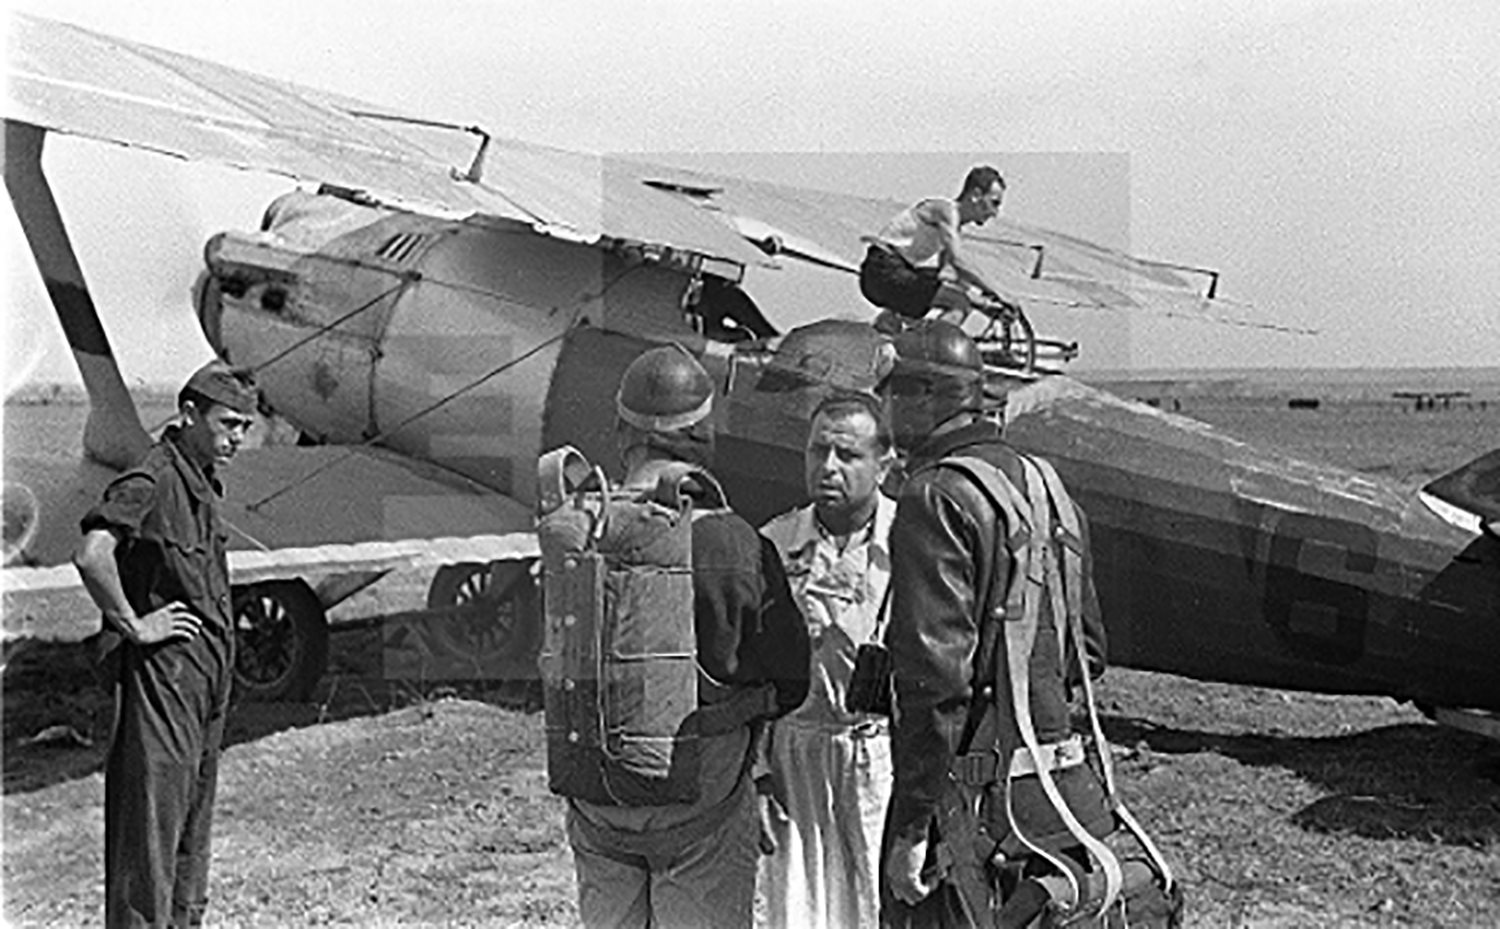 Sariñena (Huesca), Agosto de 1936. La tripulación de un Breguet XIX recibe instrucciones antes de despegar.